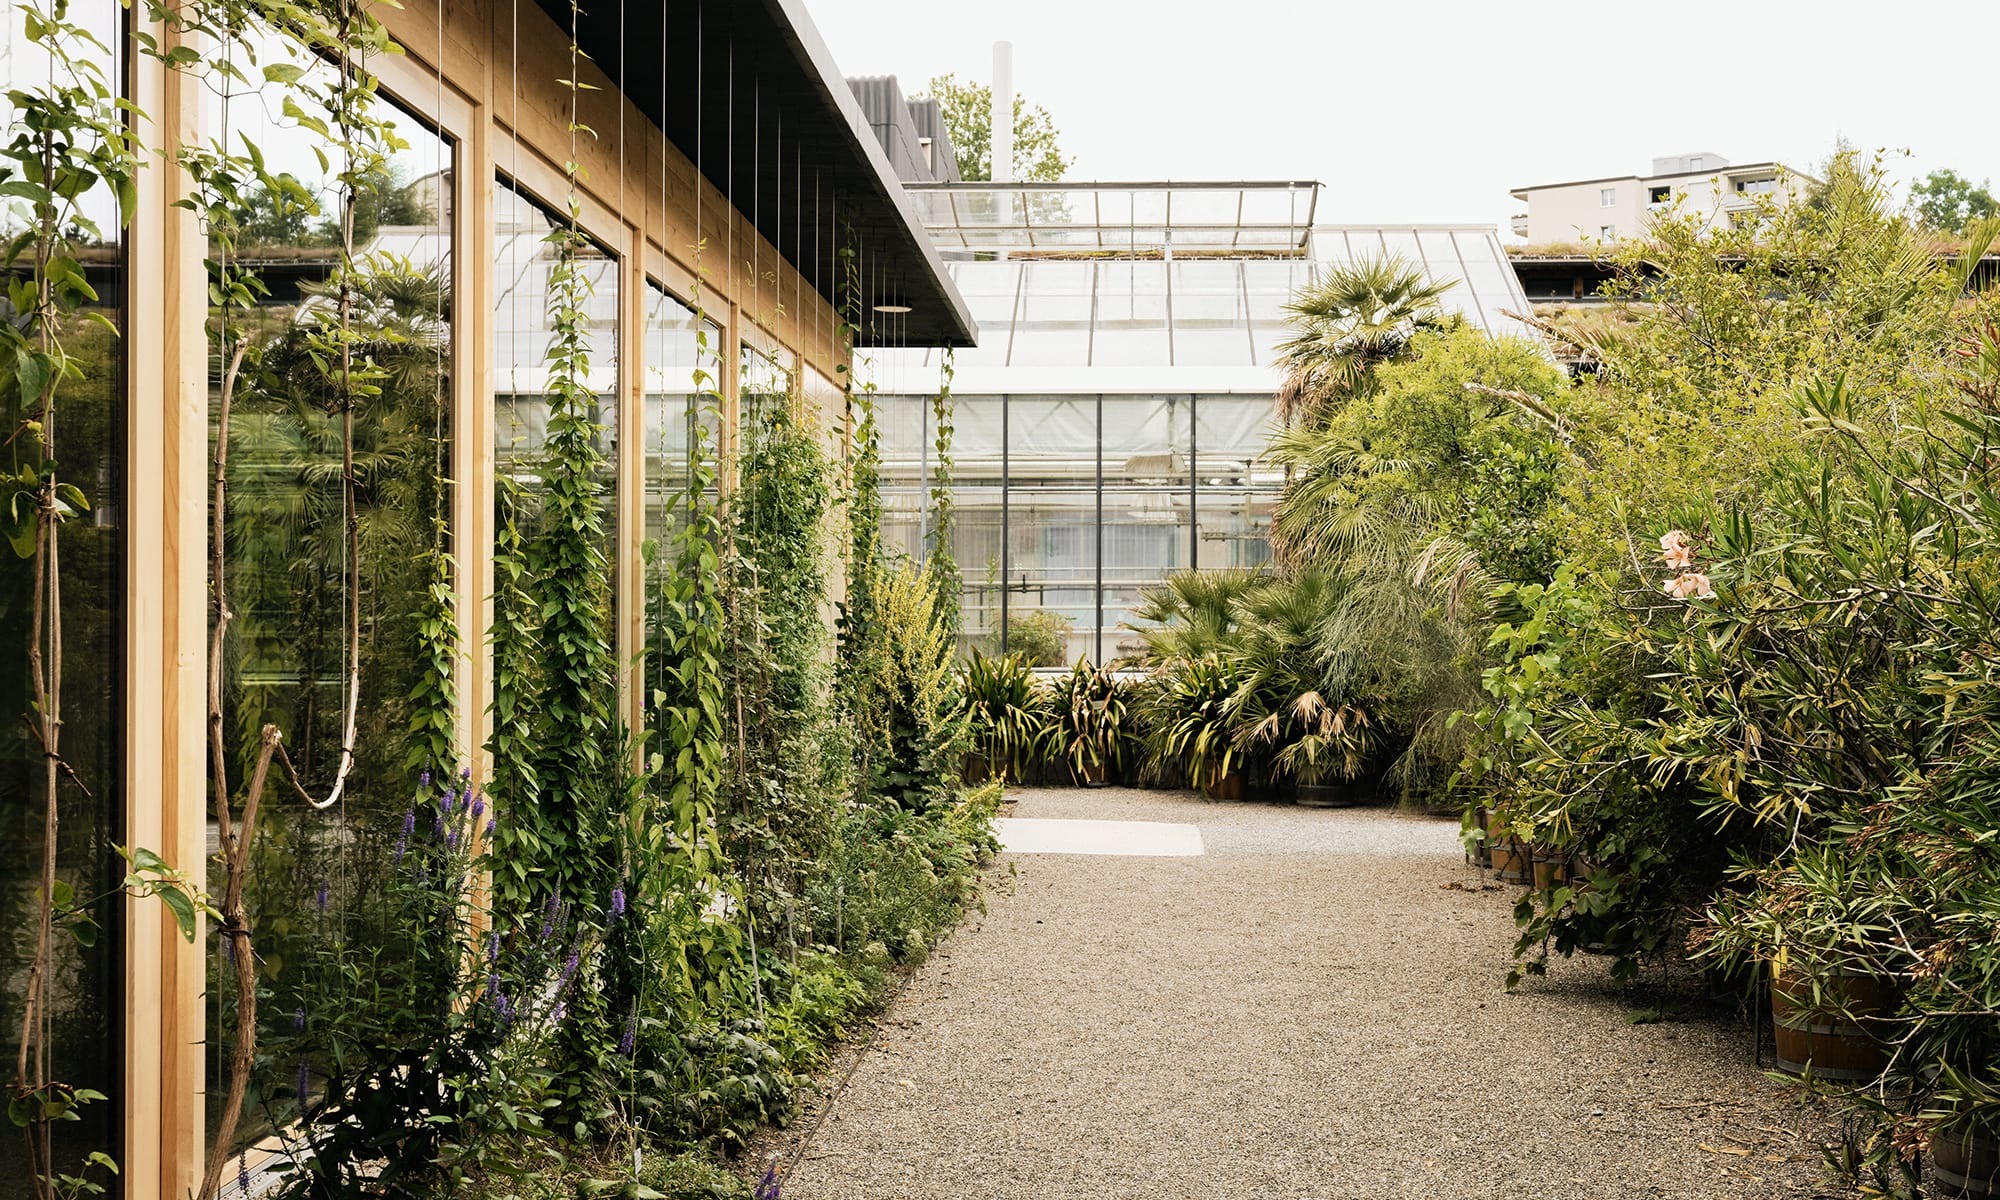 Kiesweg durch die Pflanzen und Büsche mit neuerstelltem Vortragssaal in Holzbauweise im botanischen Garten St. Gallen. 